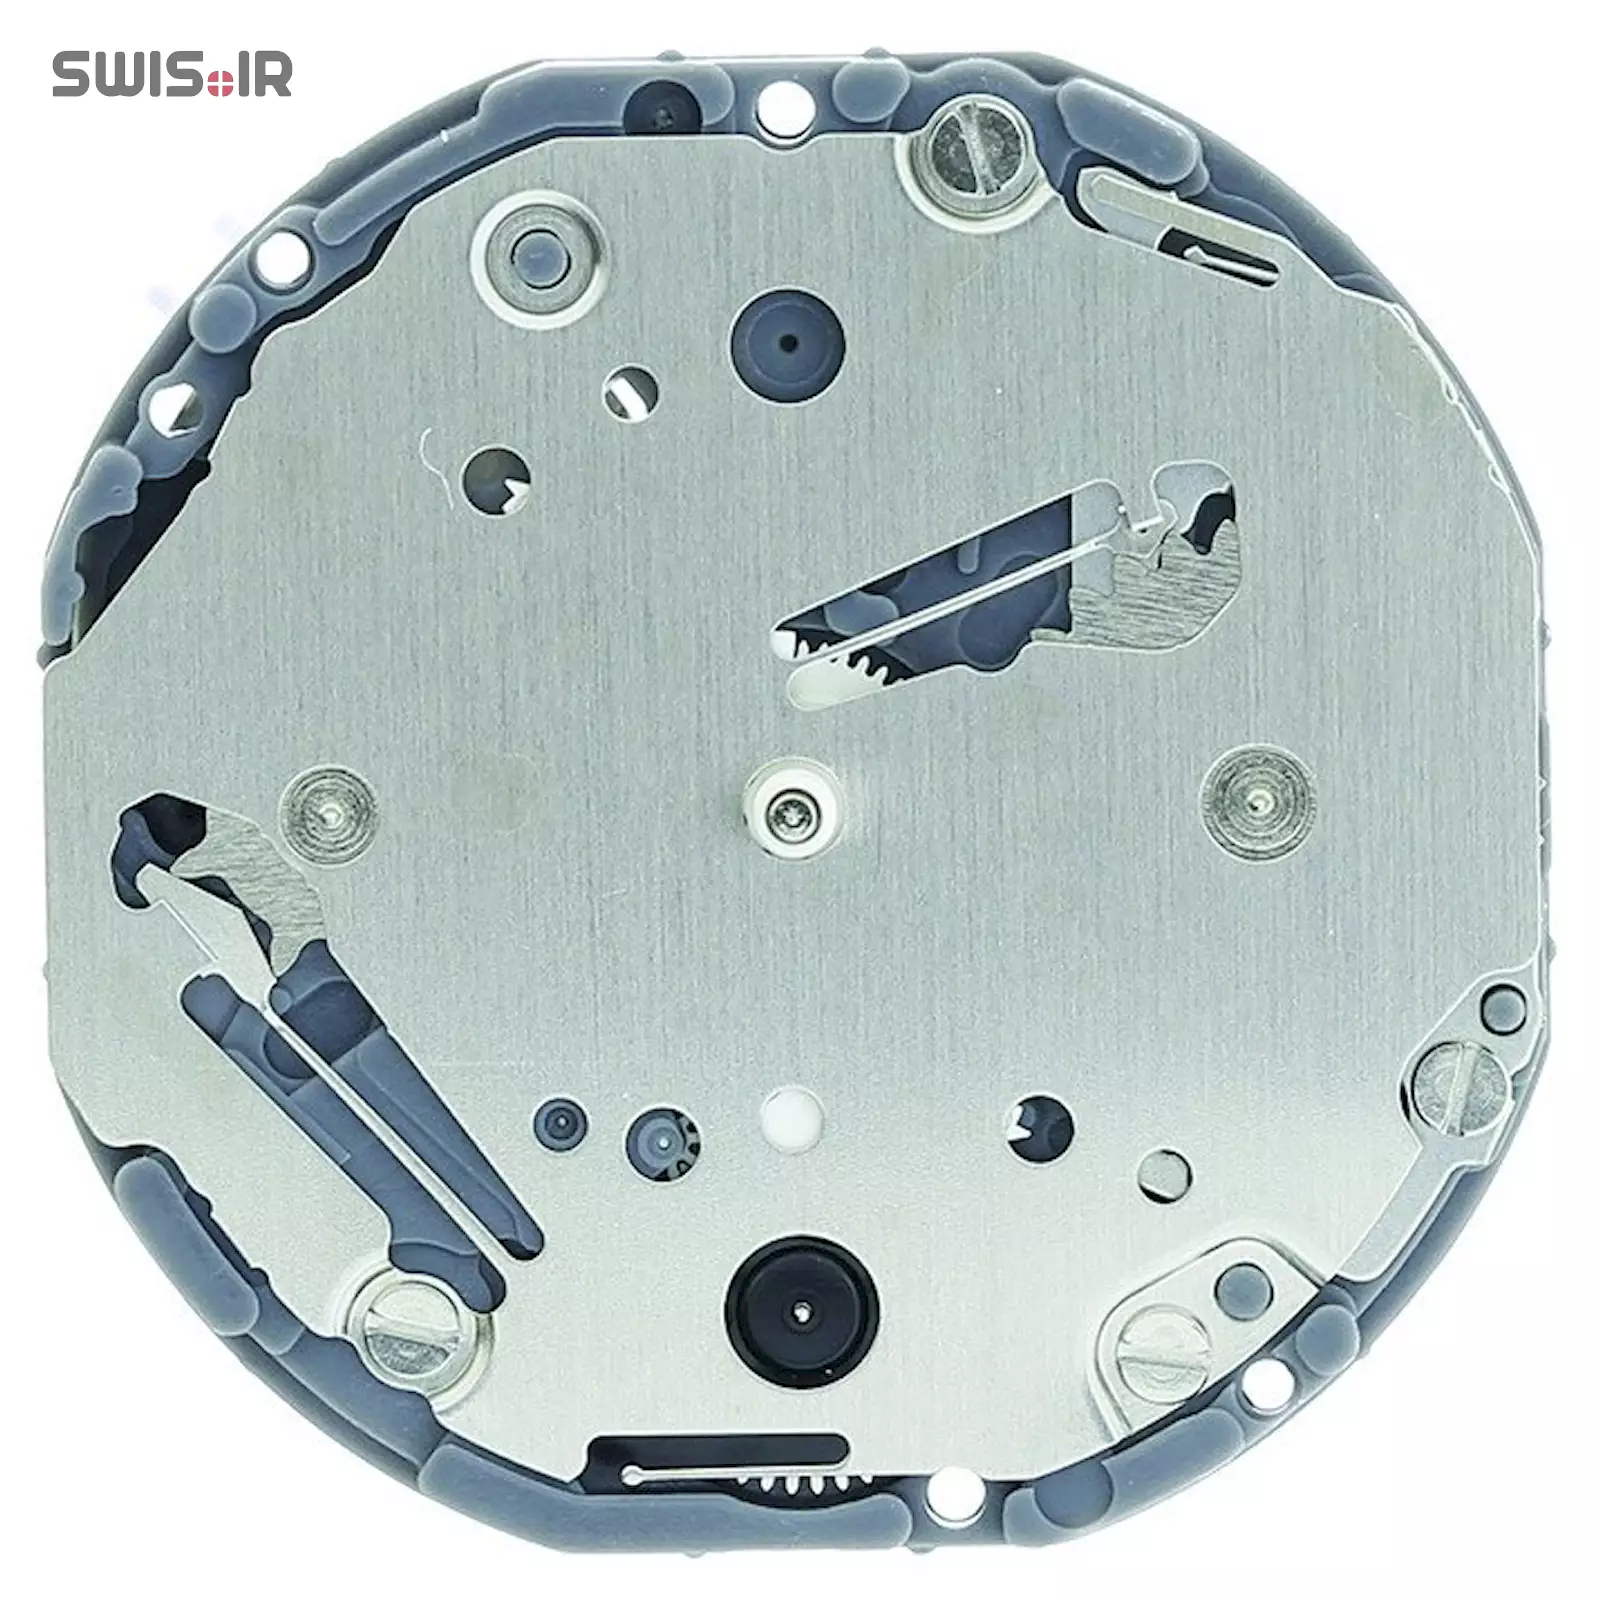 تصویر روی موتور ساعت کالیبر VD75A-SII ساخت شرکت سیکو ـ اپسون ژاپن